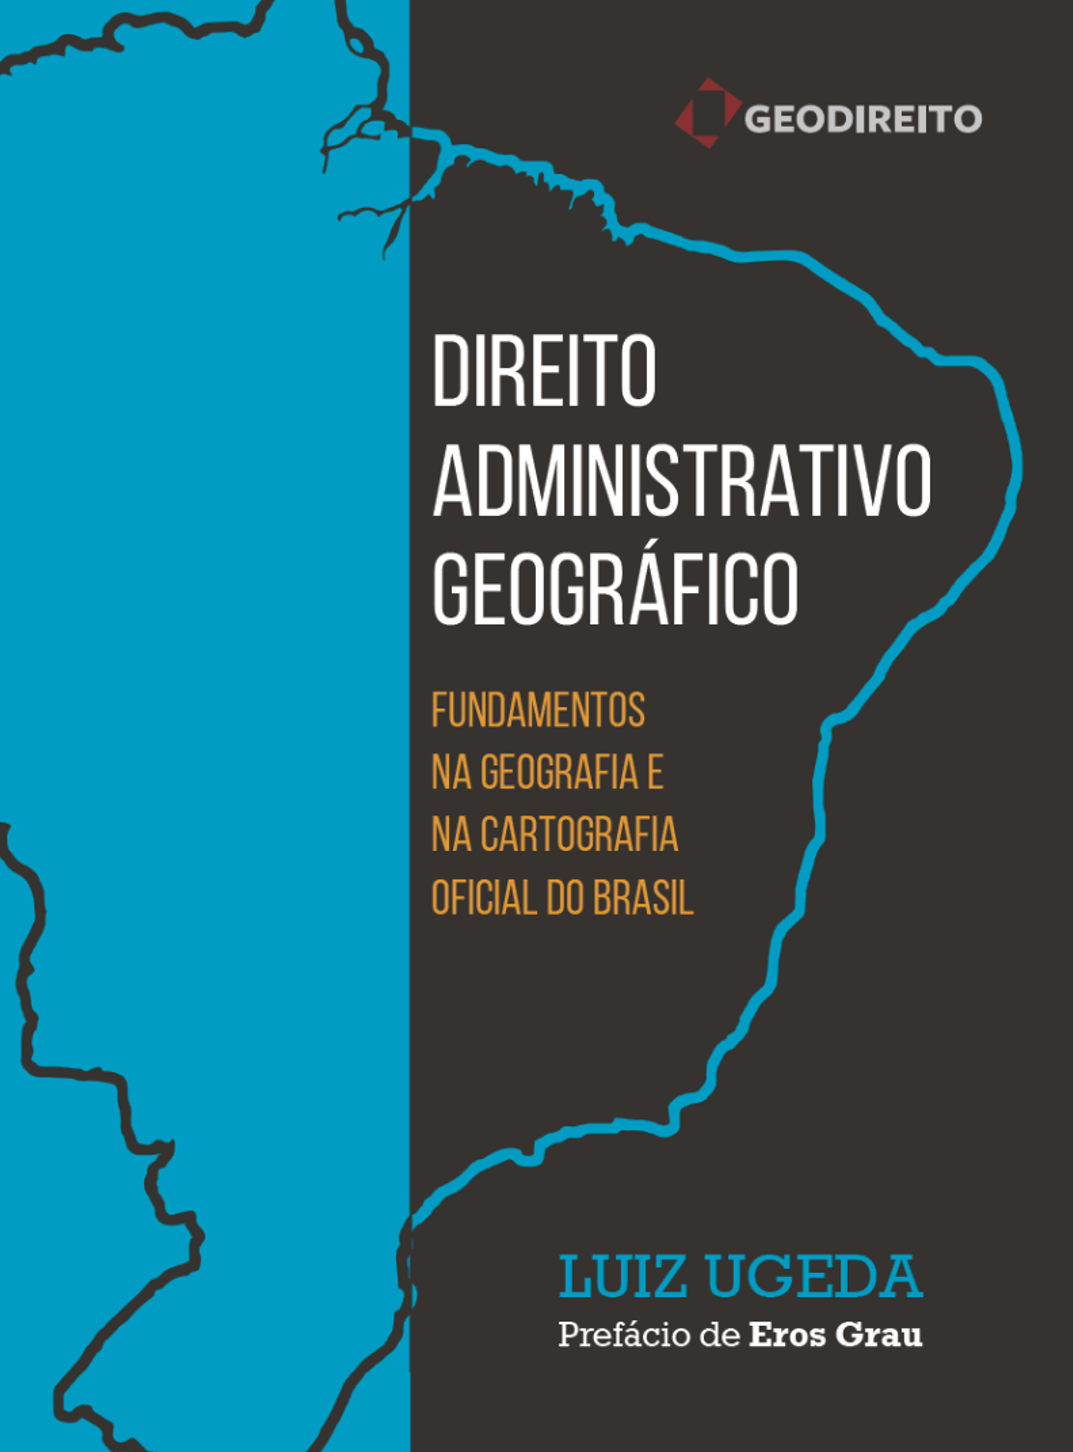 Obra “Direito Administrativo Geográfico” é disponibilizada de forma online e gratuita Geocracia